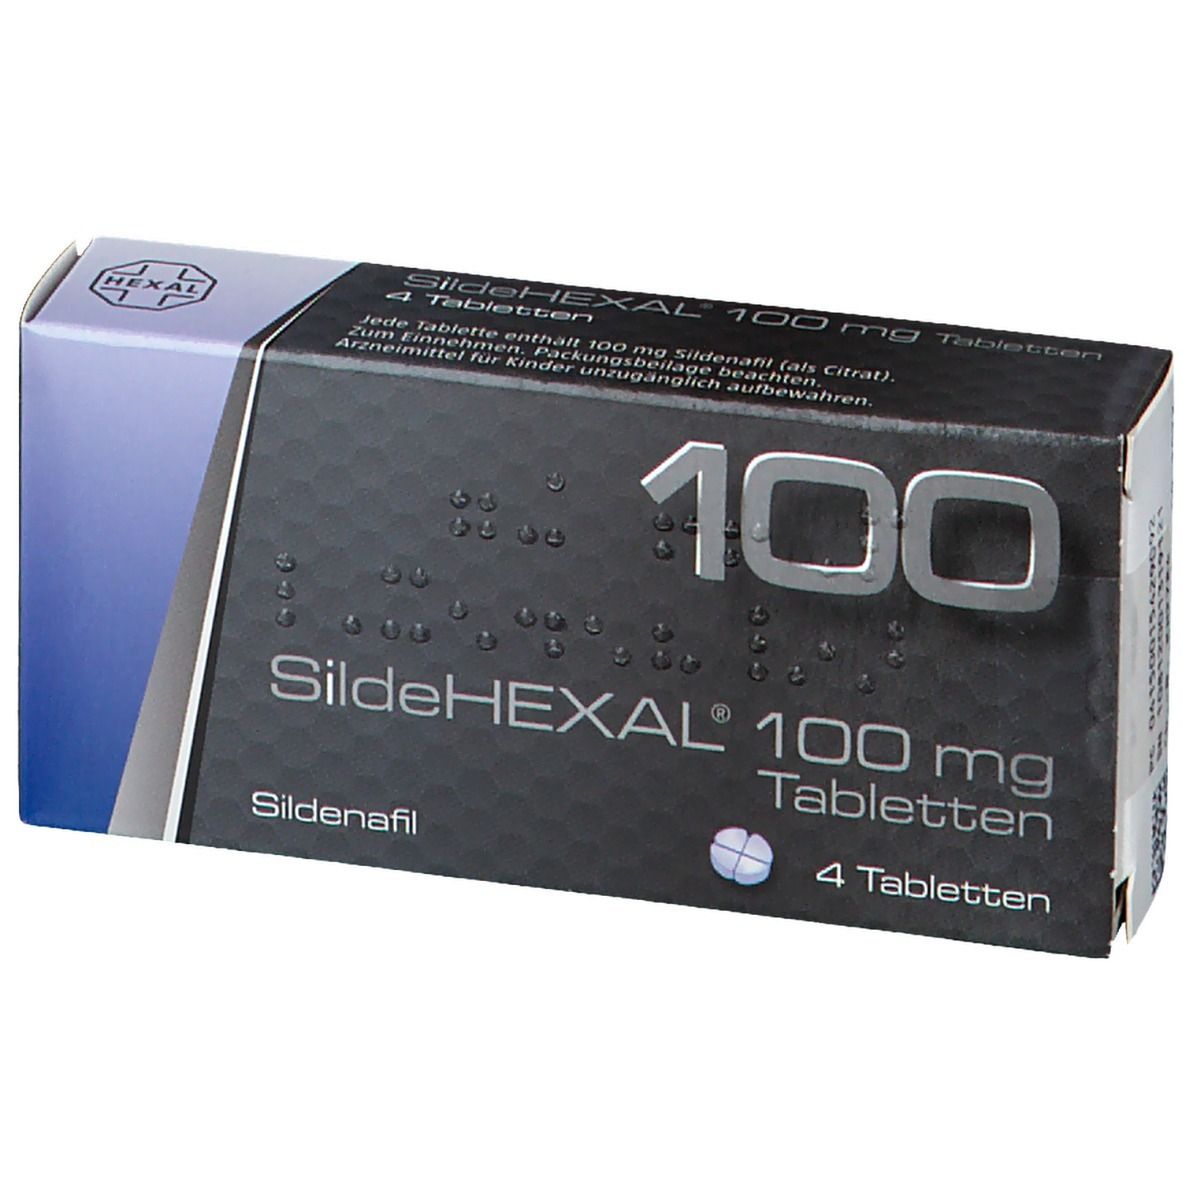 SildeHEXAL® 100 mg